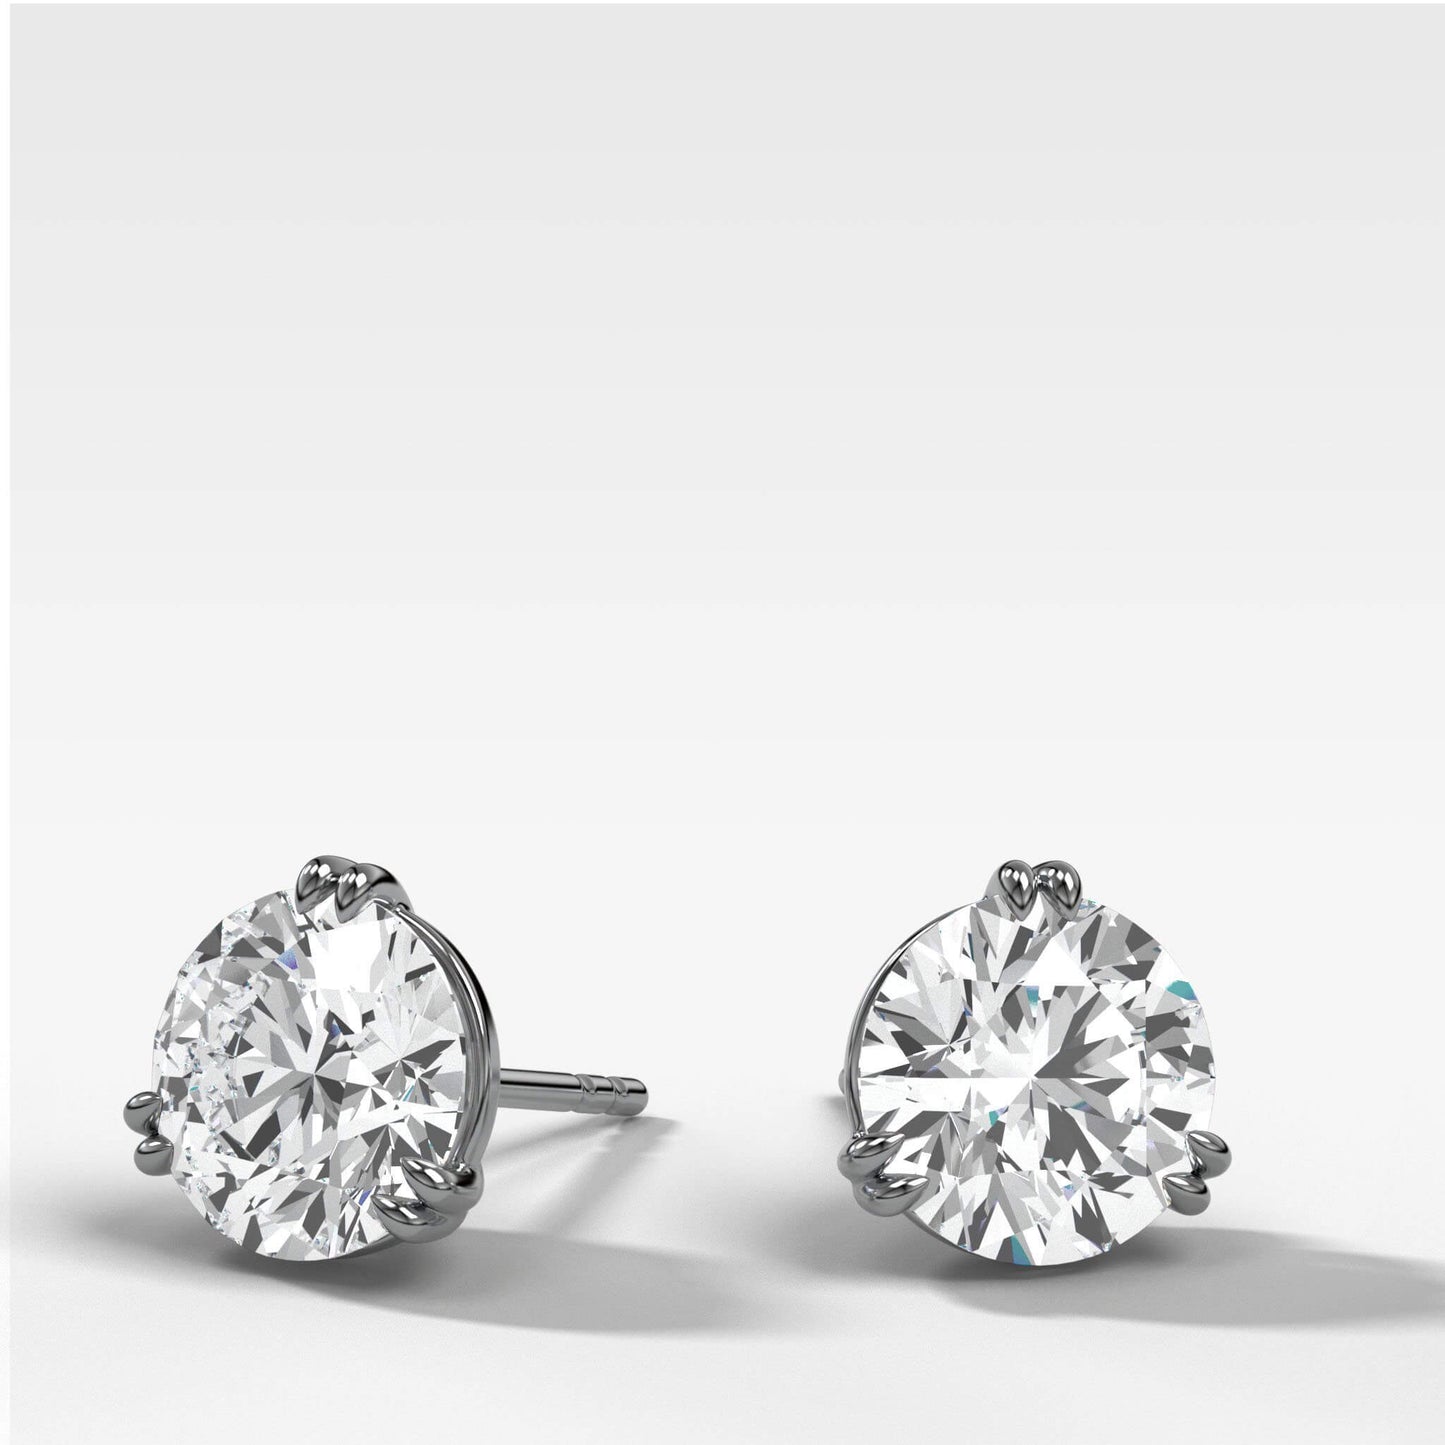 Double Claw Diamond Earrings, 9-18K Gold